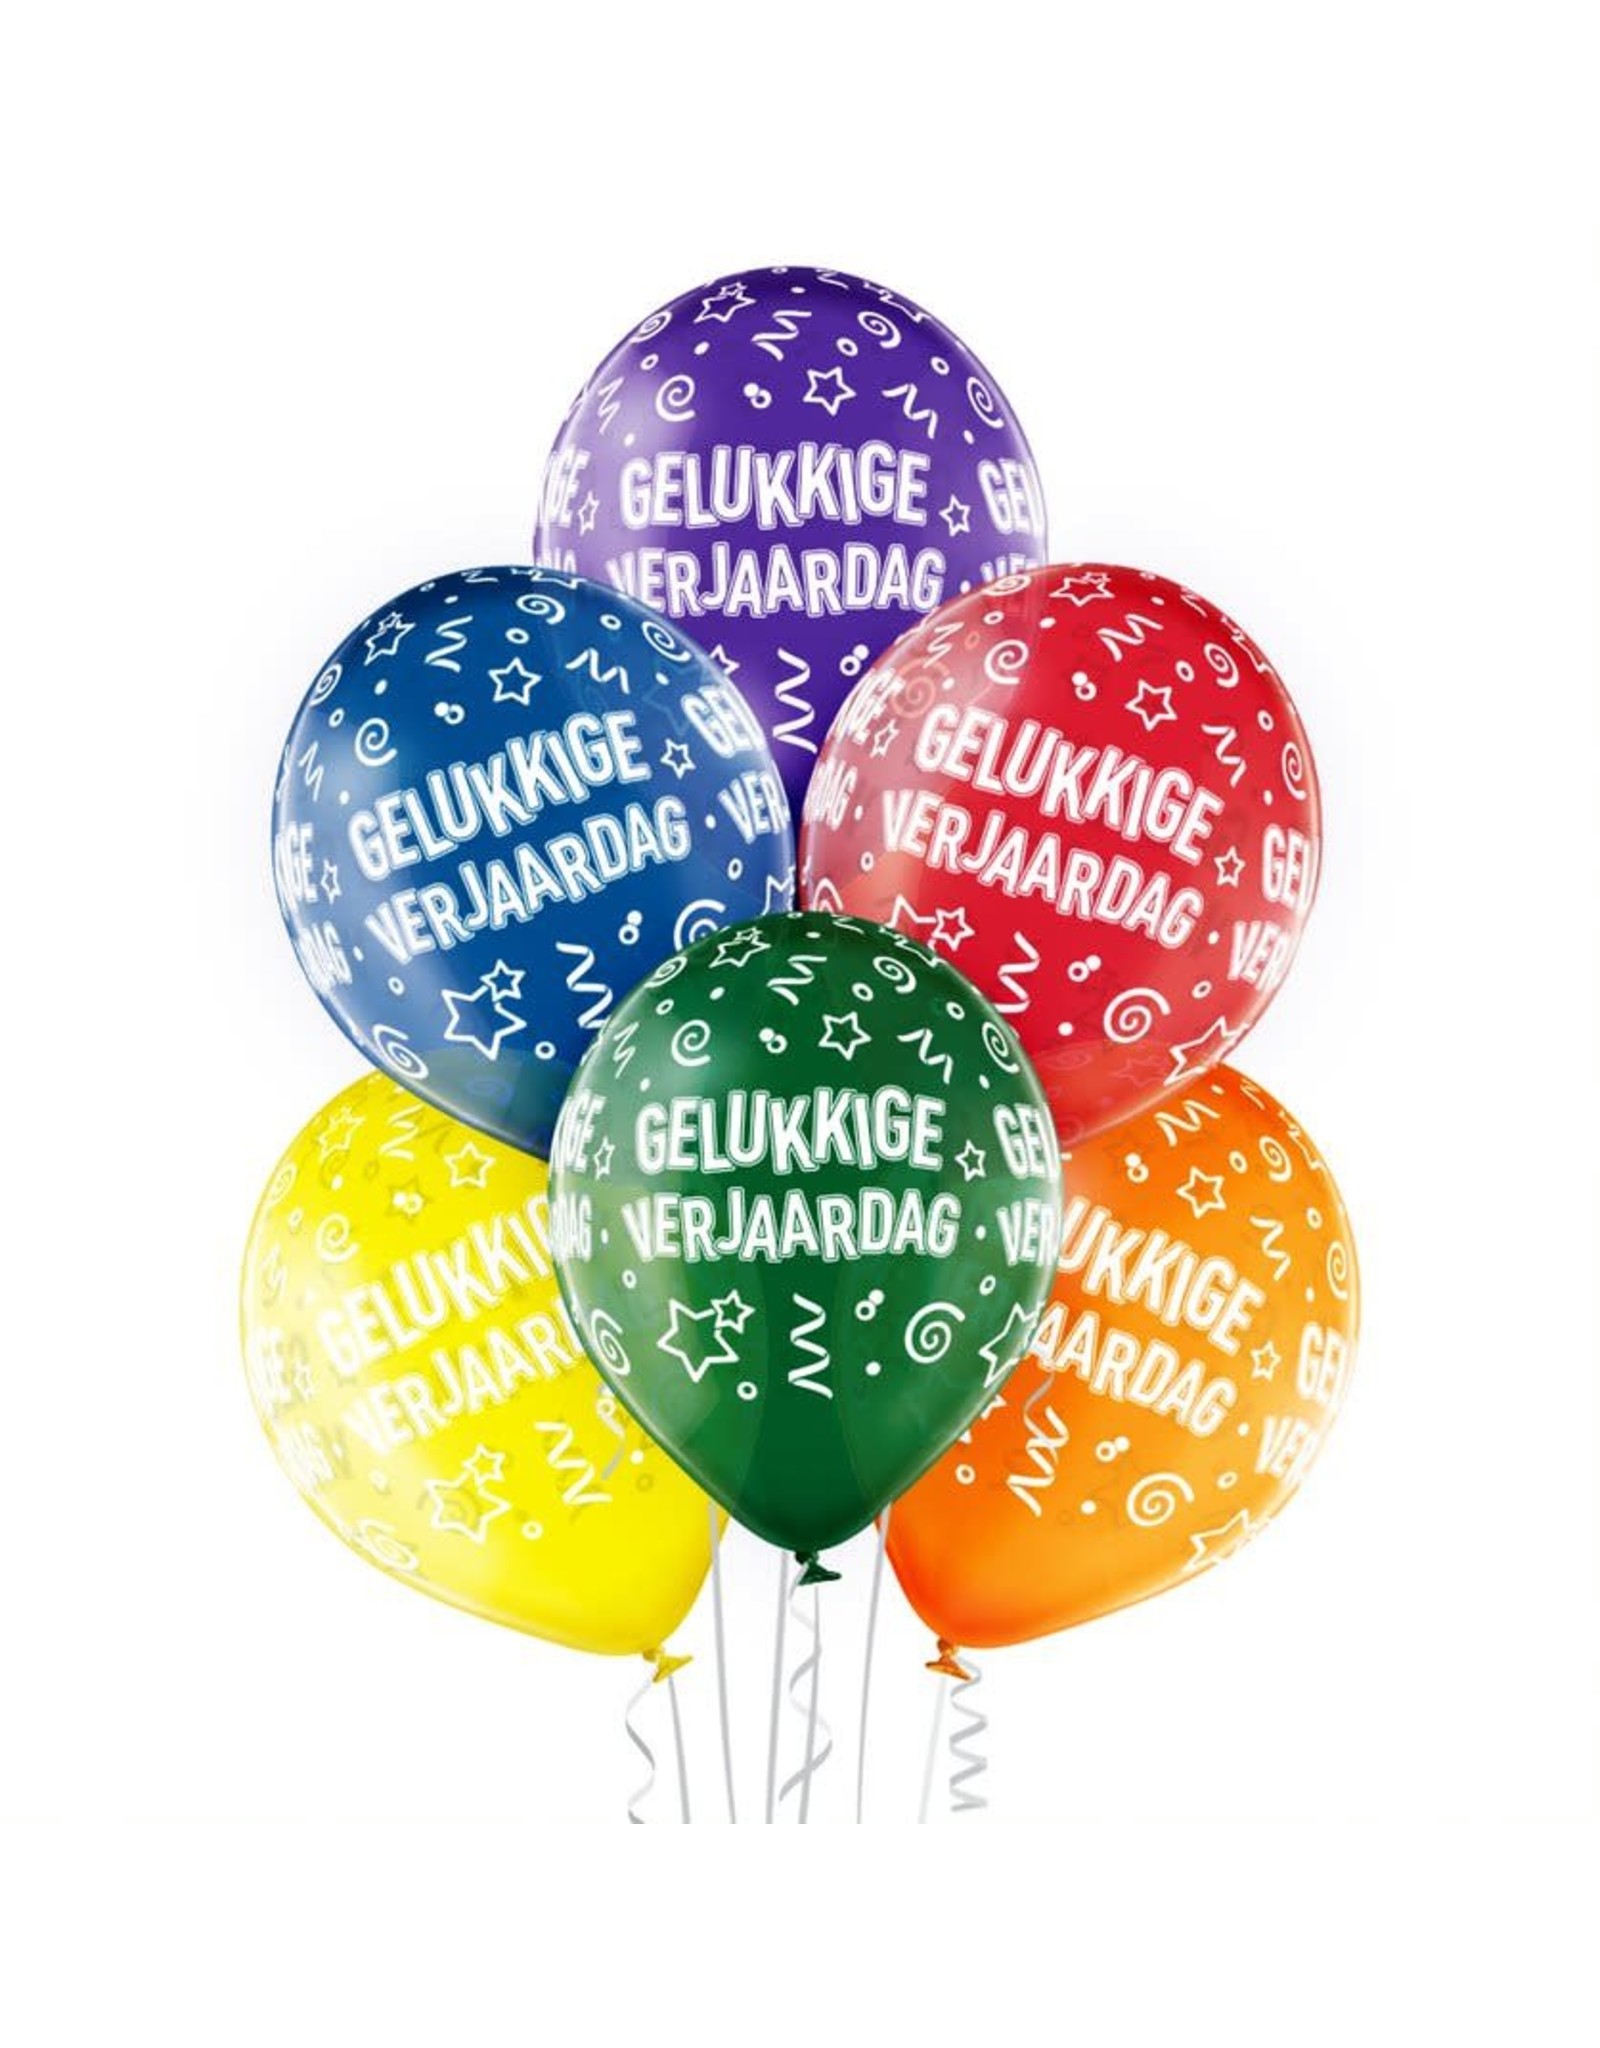 Verbergen Maar gesprek Belbal latex ballonnen gelukkige verjaardag 6 stuks - | Celebrate Online